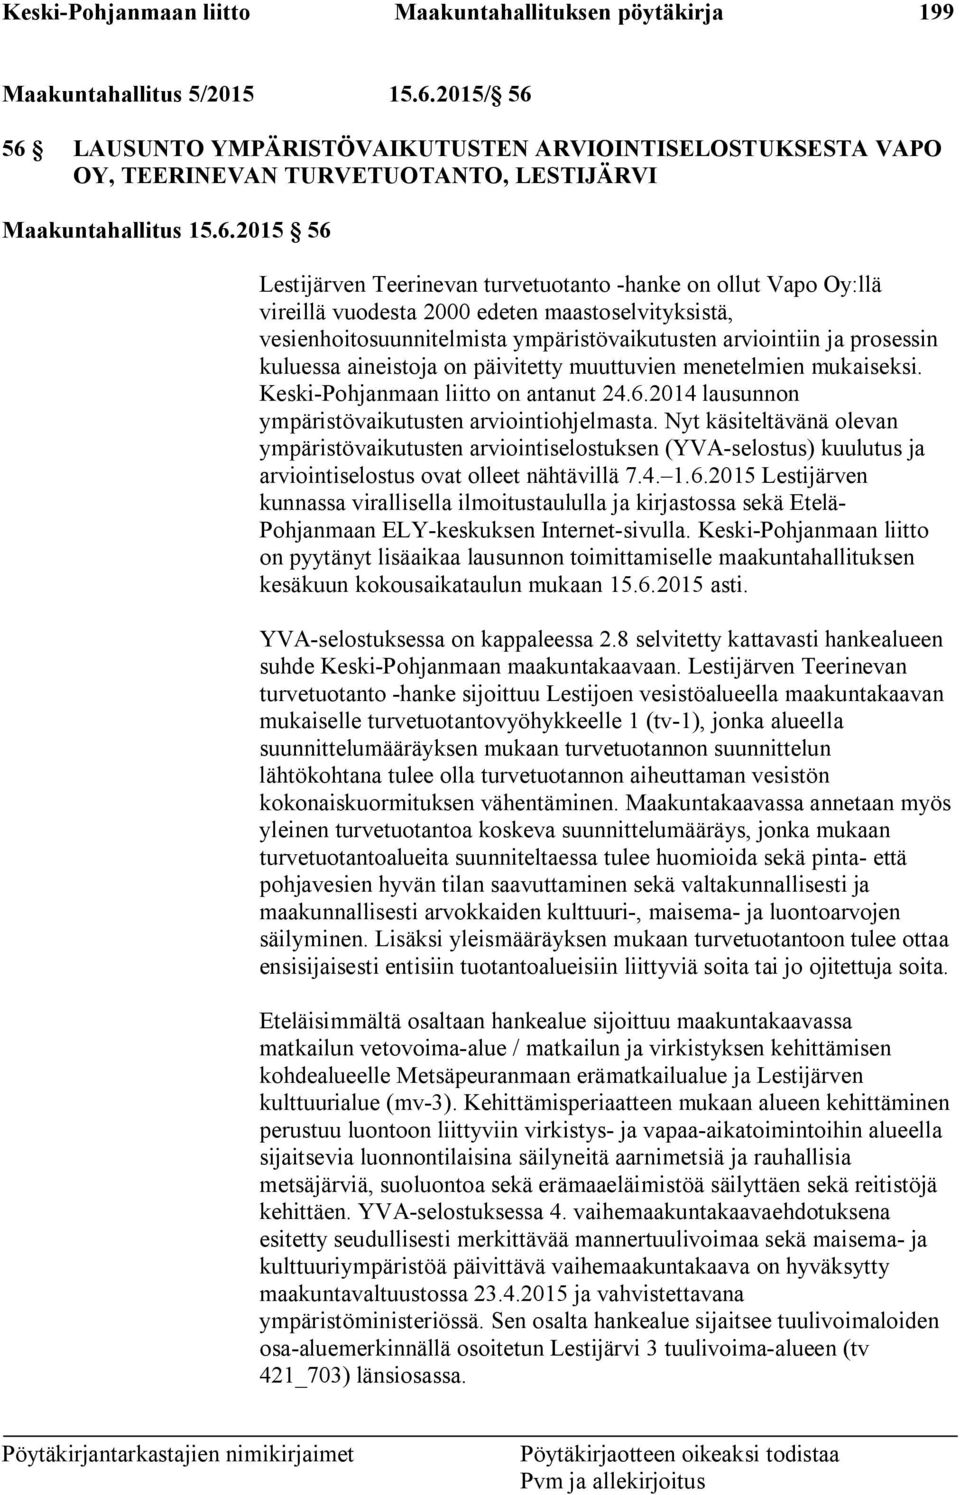 56 LAUSUNTO YMPÄRISTÖVAIKUTUSTEN ARVIOINTISELOSTUKSESTA VAPO OY, TEERINEVAN TURVETUOTANTO, LESTIJÄRVI Maakuntahallitus 15.6.2015 56 Lestijärven Teerinevan turvetuotanto -hanke on ollut Vapo Oy:llä